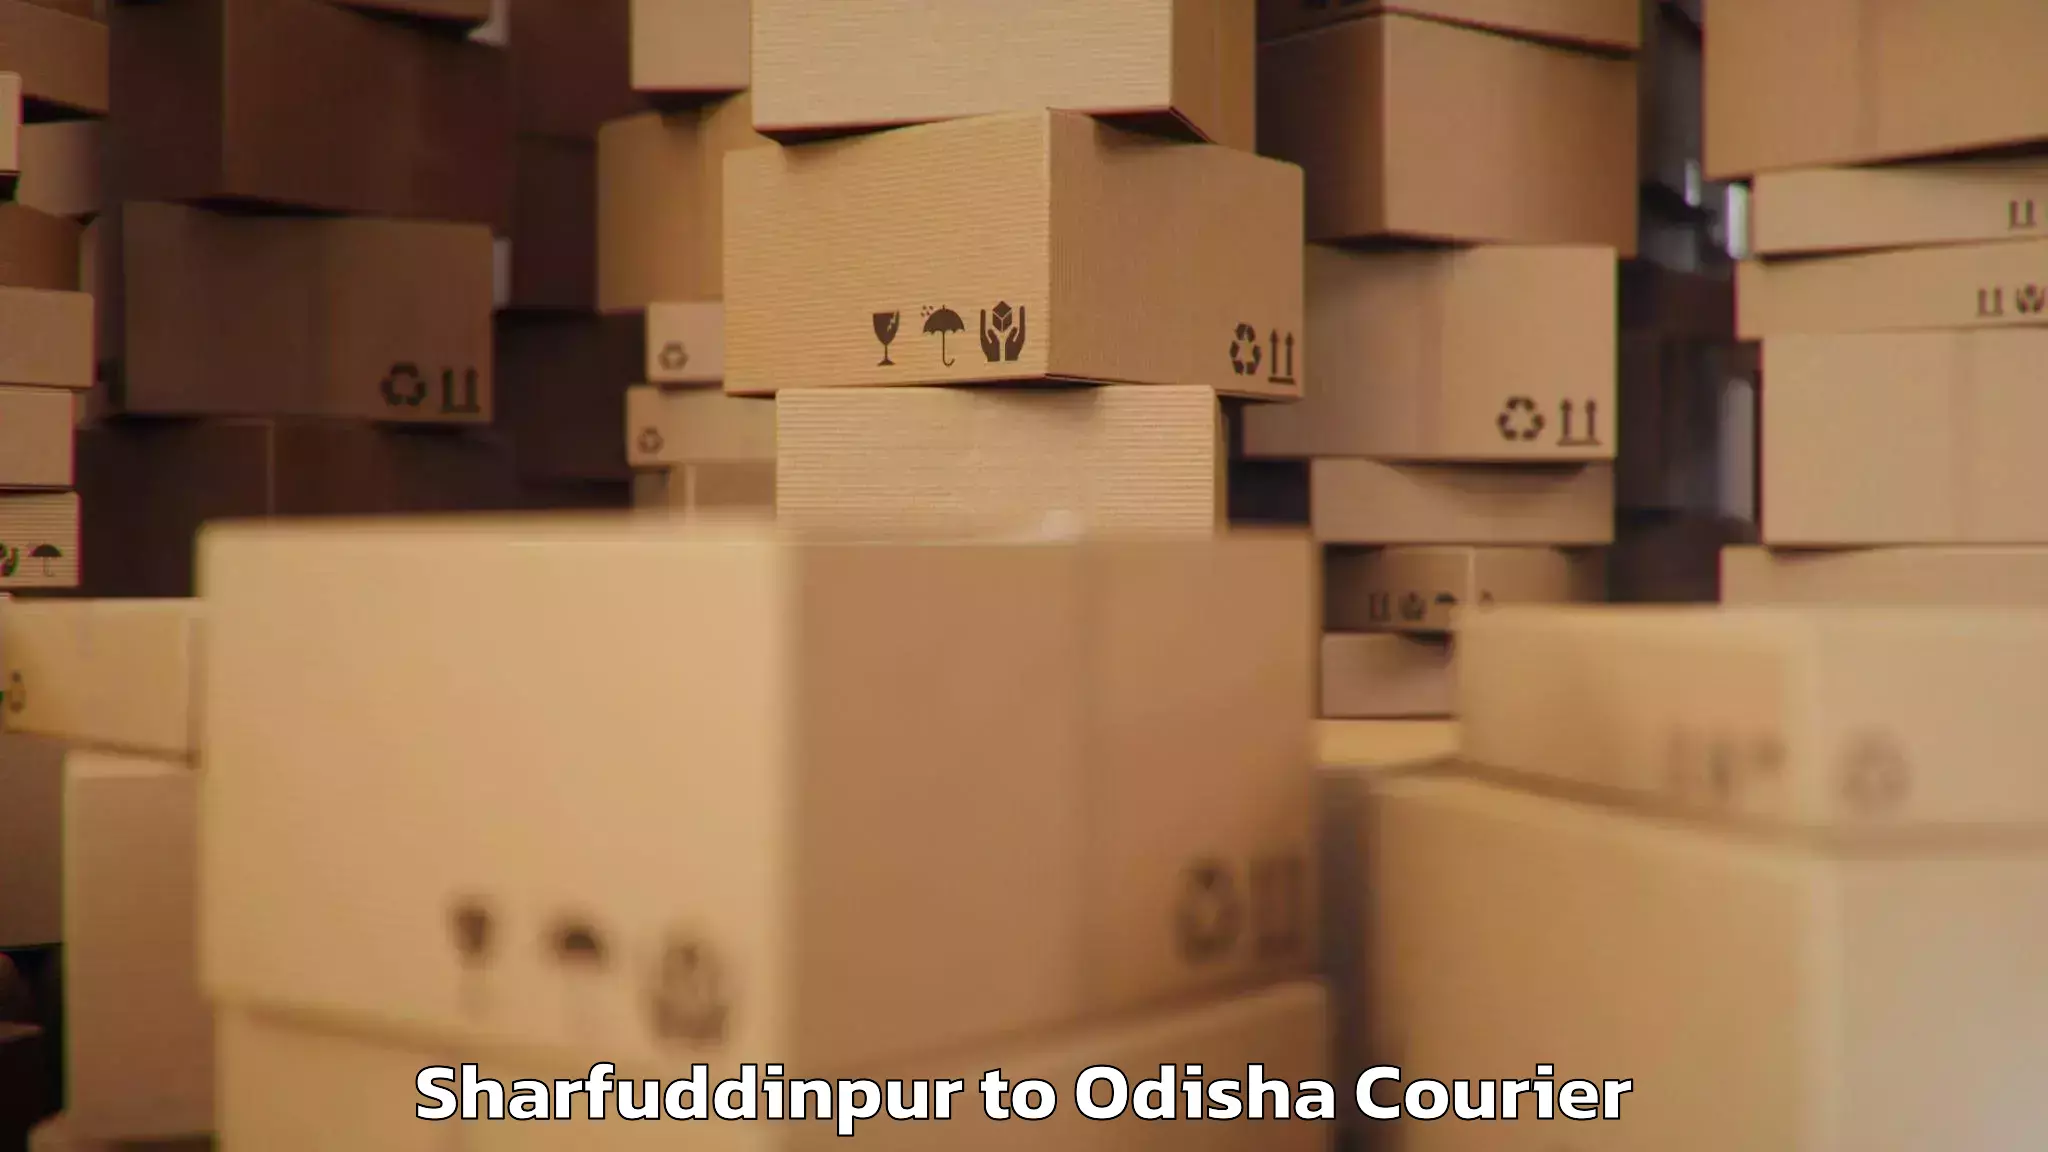 Luggage transport tips Sharfuddinpur to Balikuda